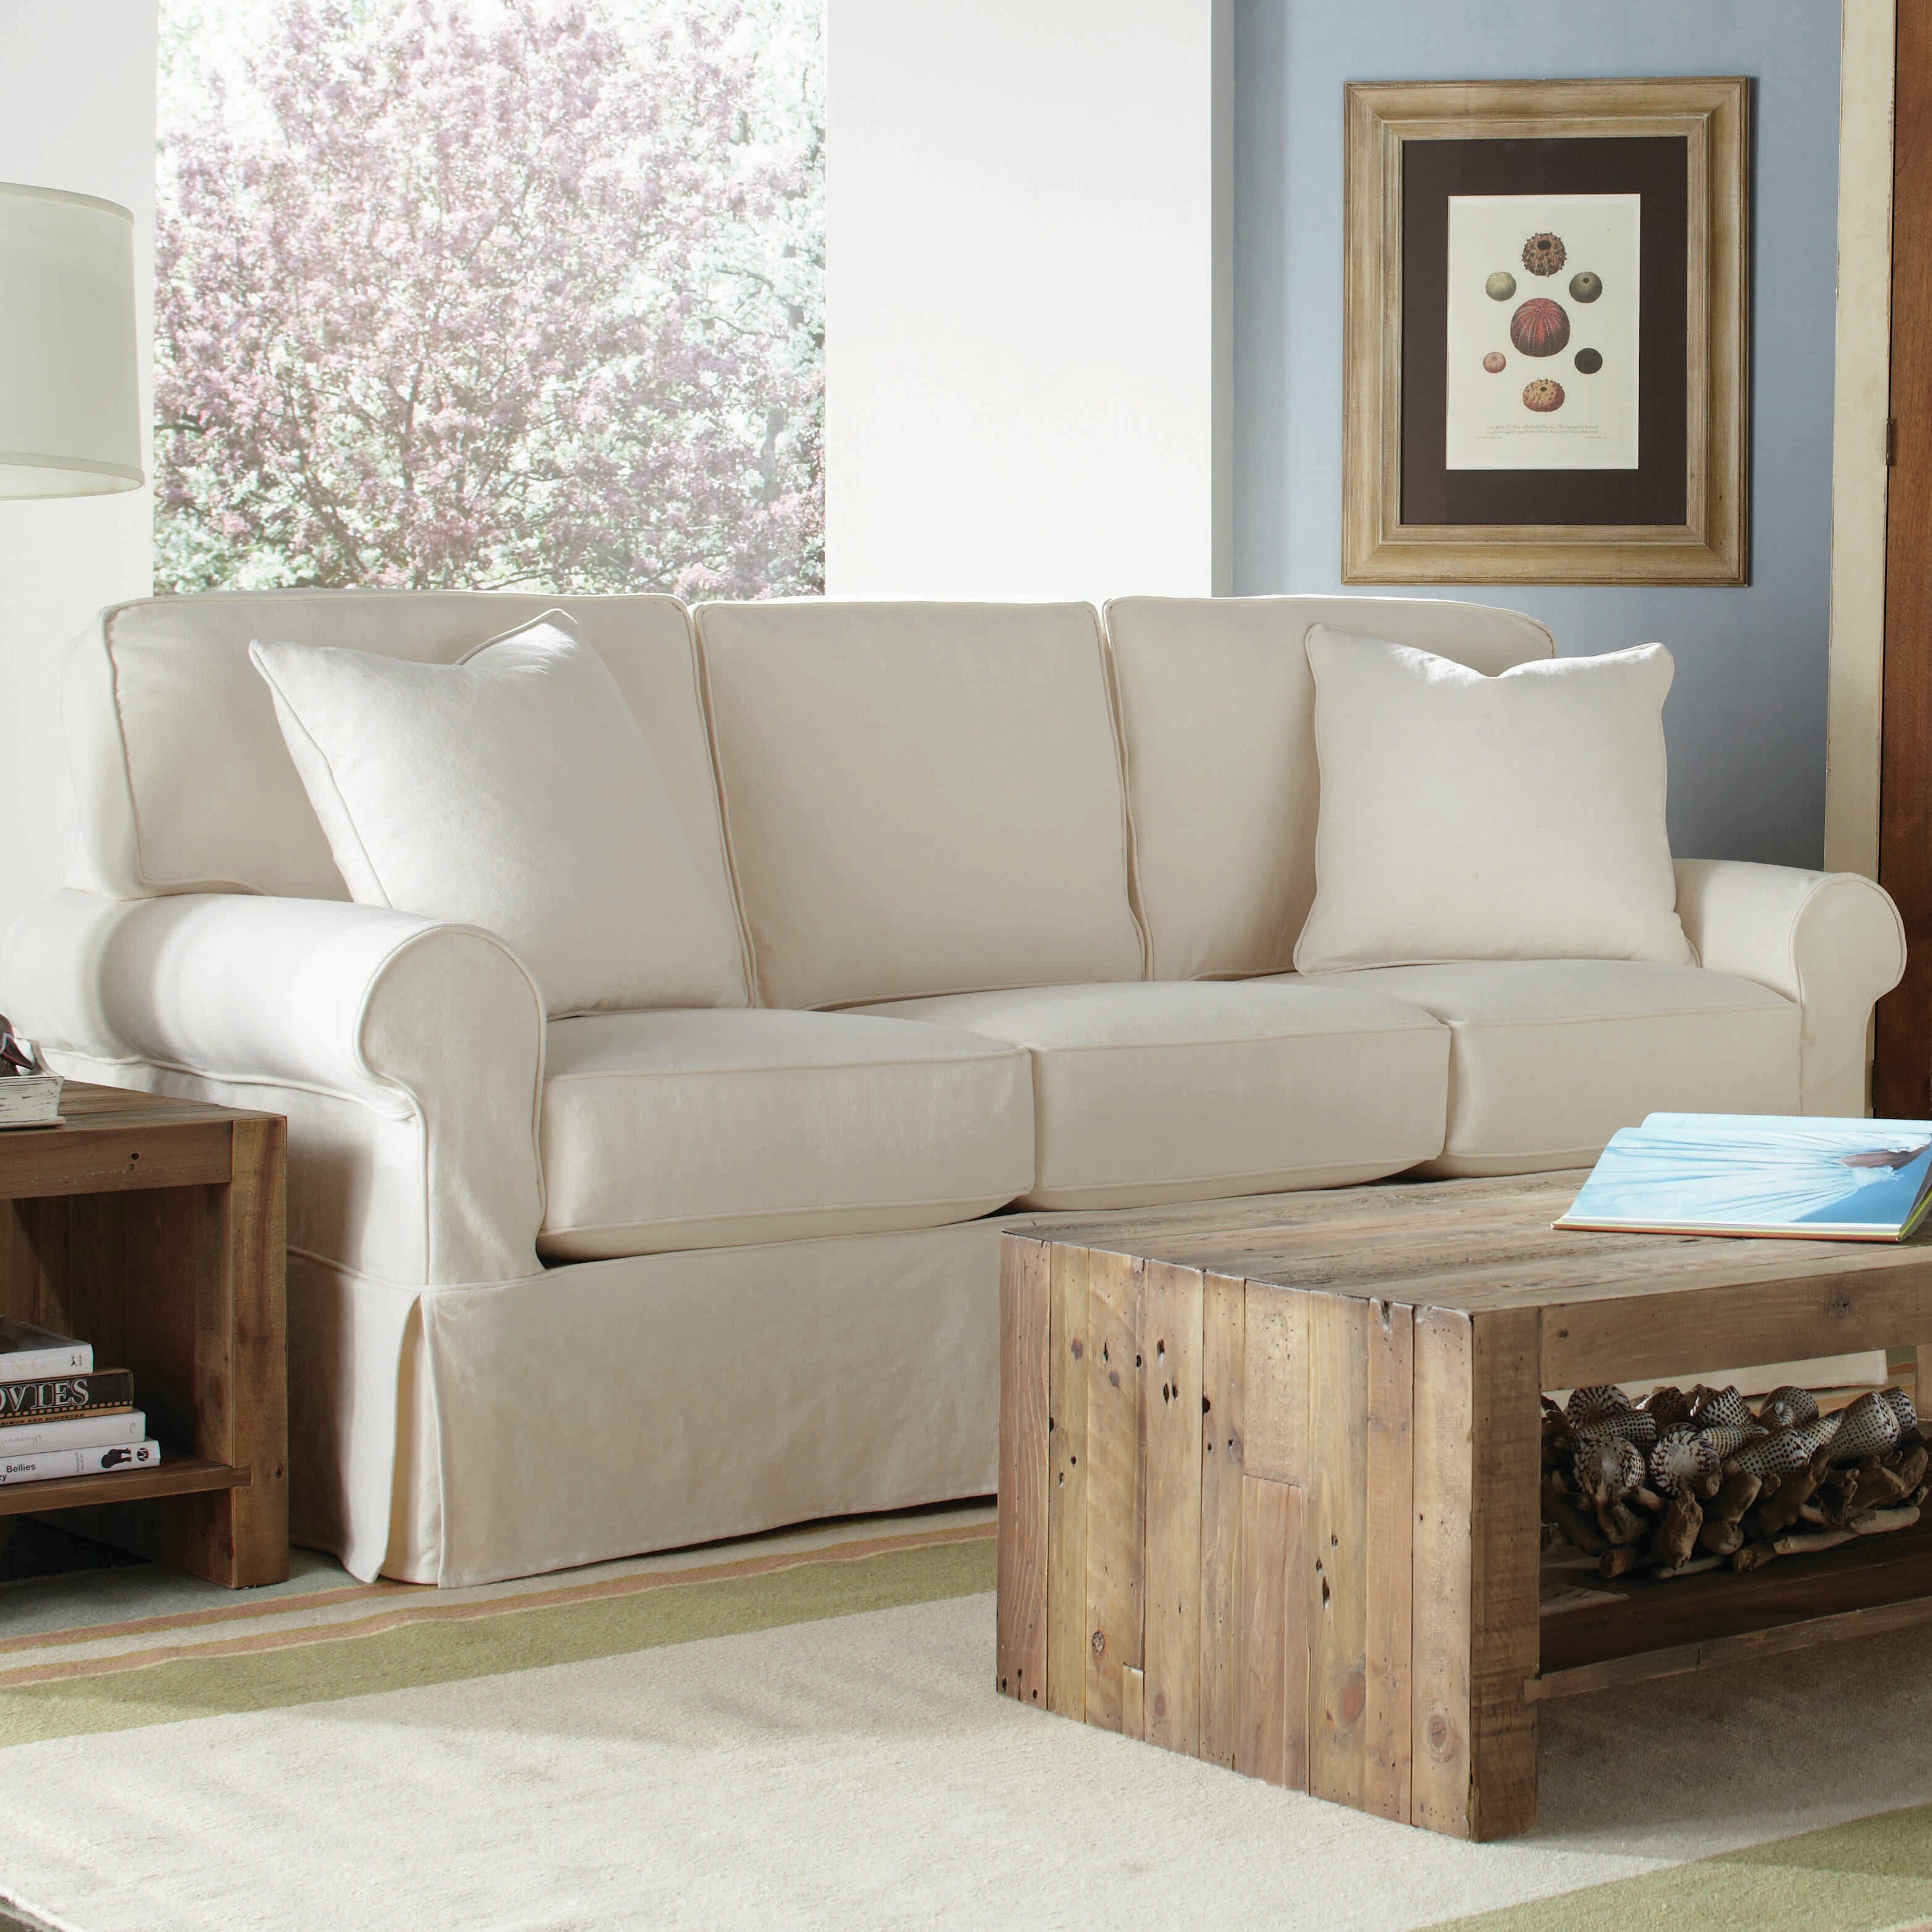 Rowe Furniture Nantucket Slipcovered Sleeper Sofa